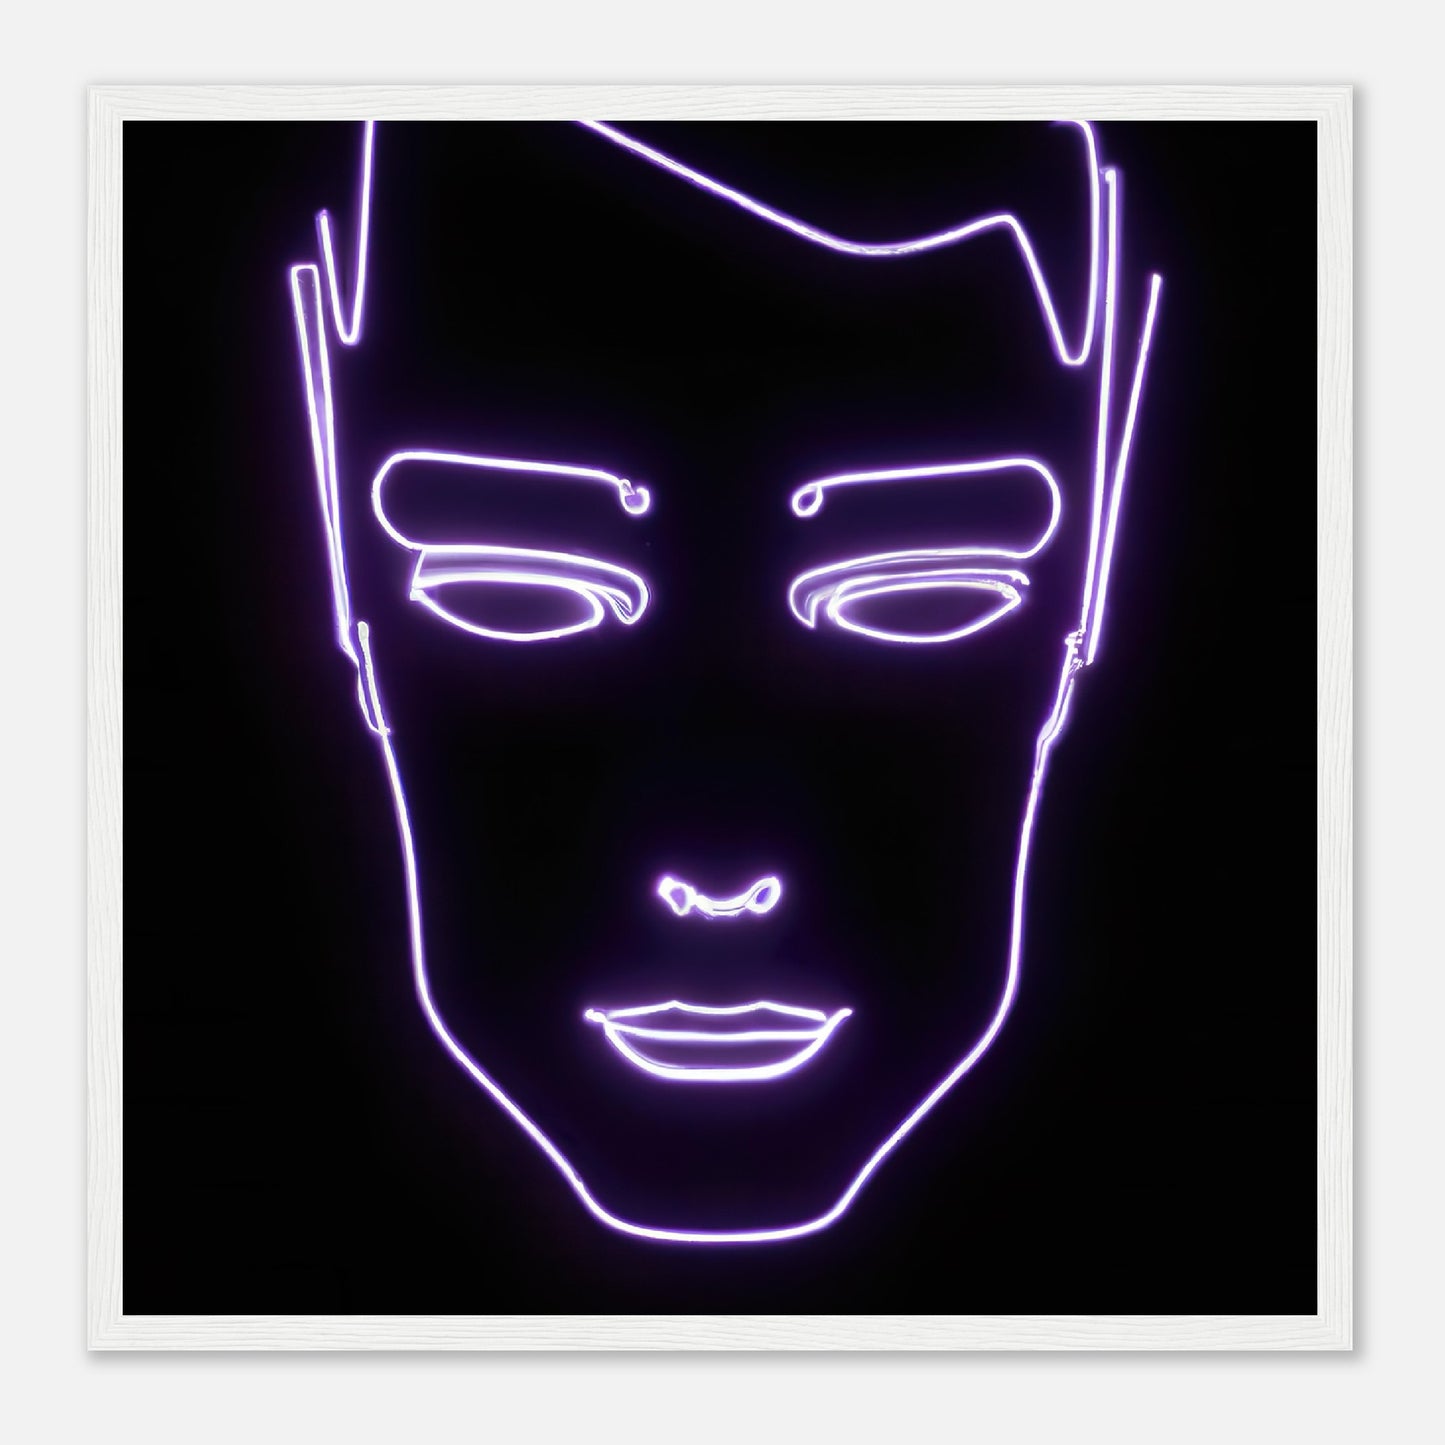 Gerahmtes Premium-Poster - Männliches Gesicht - Neon Stil, KI-Kunst - RolConArt, Neon, 50x50-cm-20x20-Weiß